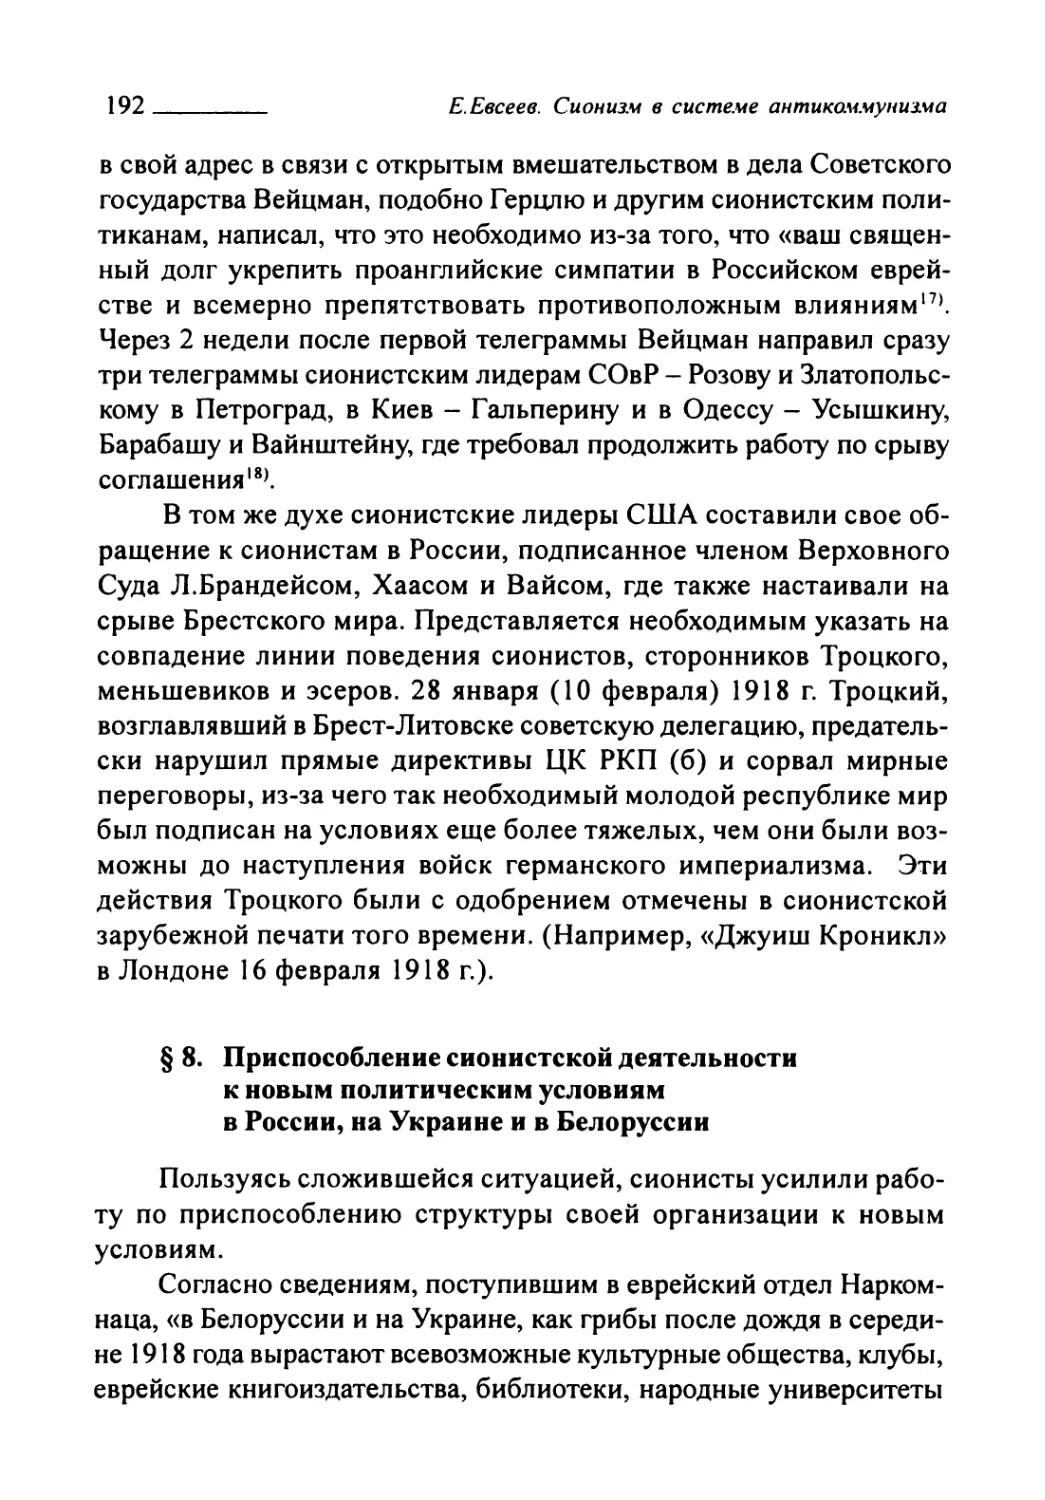 § 8. Приспособление сионистской деятельности к новым политическим условиям в России, на Украине и в Белоруссии